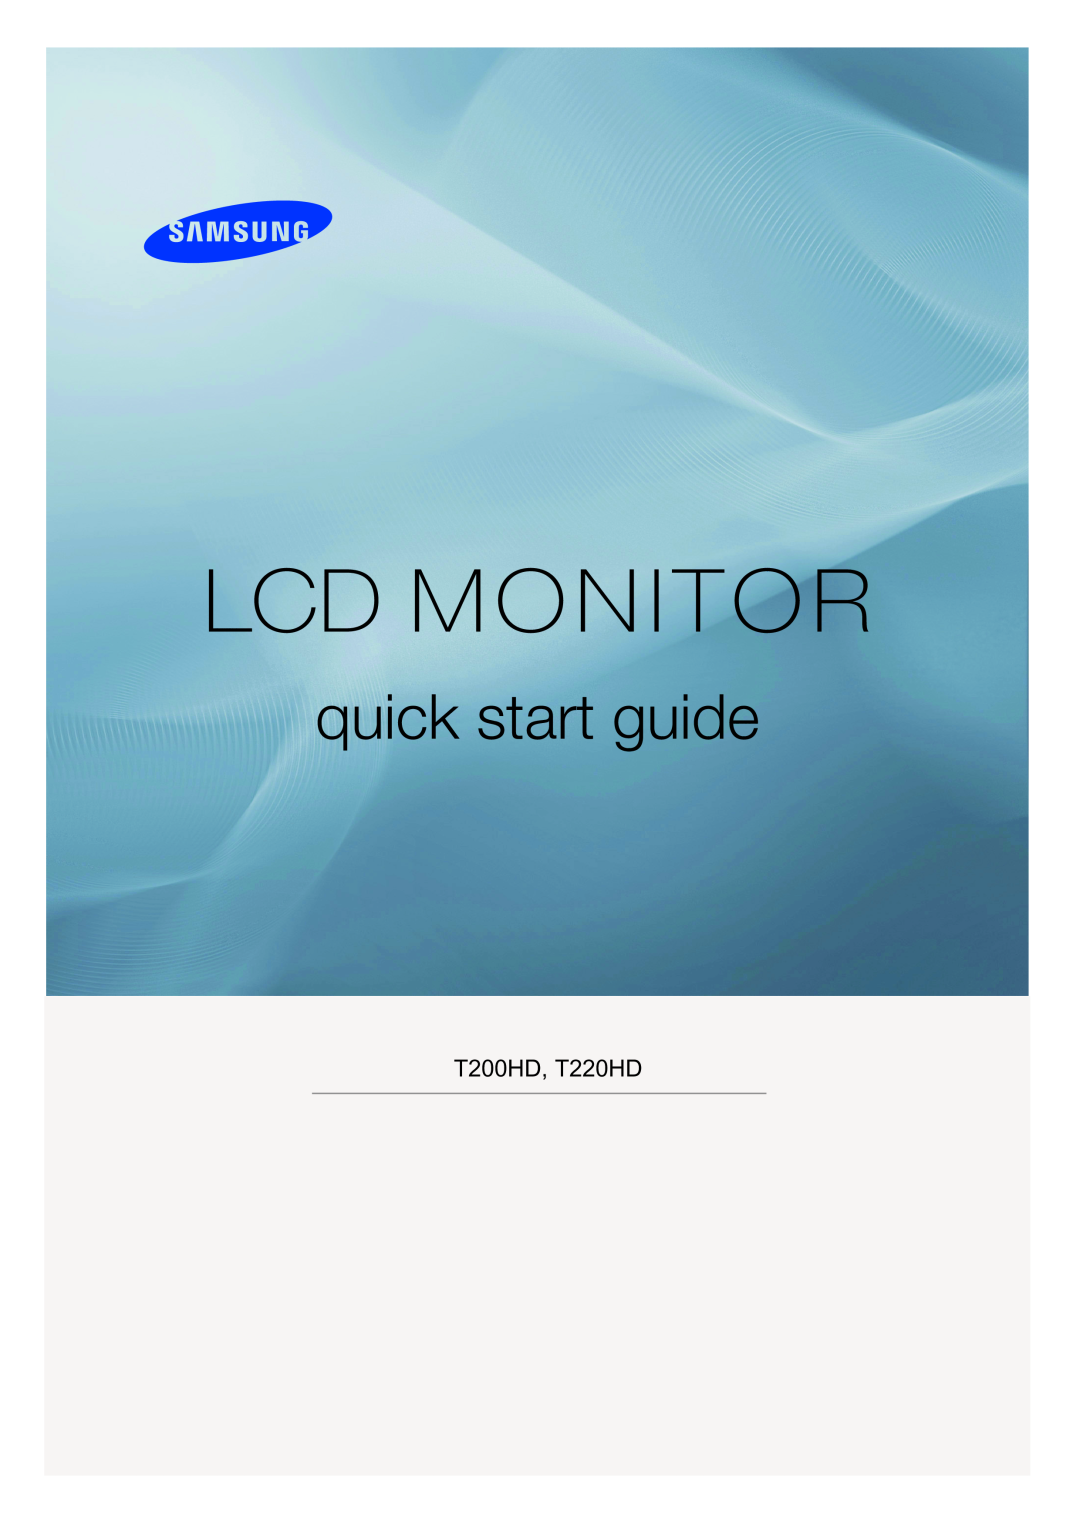 Samsung LS24TDVSUV/EN, LS20TDVSUV/EN, LS24TDDSUV/EN manual SyncMaster T200HD/T220HD/T240HD/T260HD, LCD Monitor, User Manual 